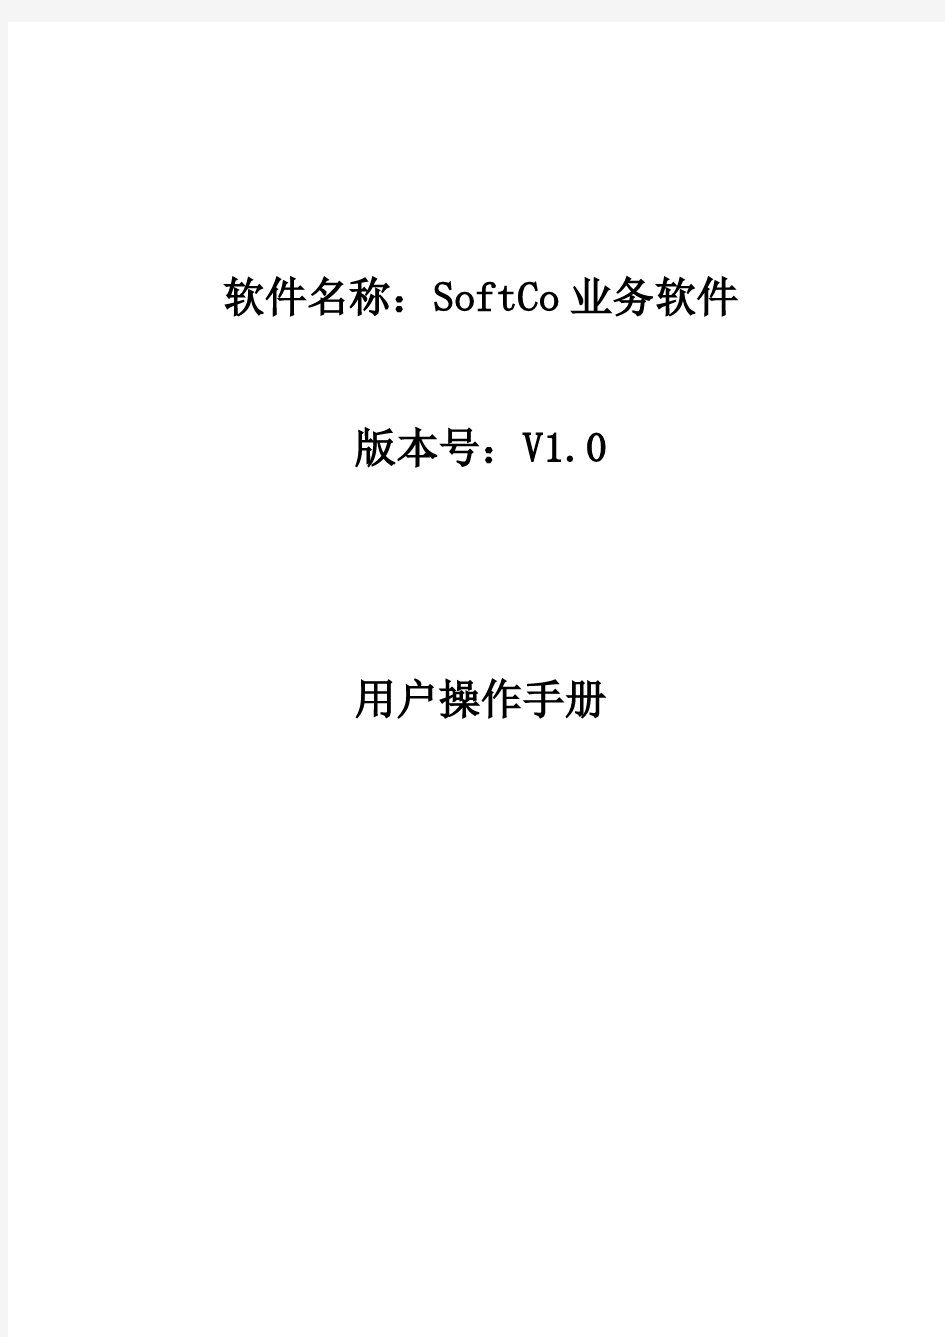 SoftCo业务系统用户操作手册